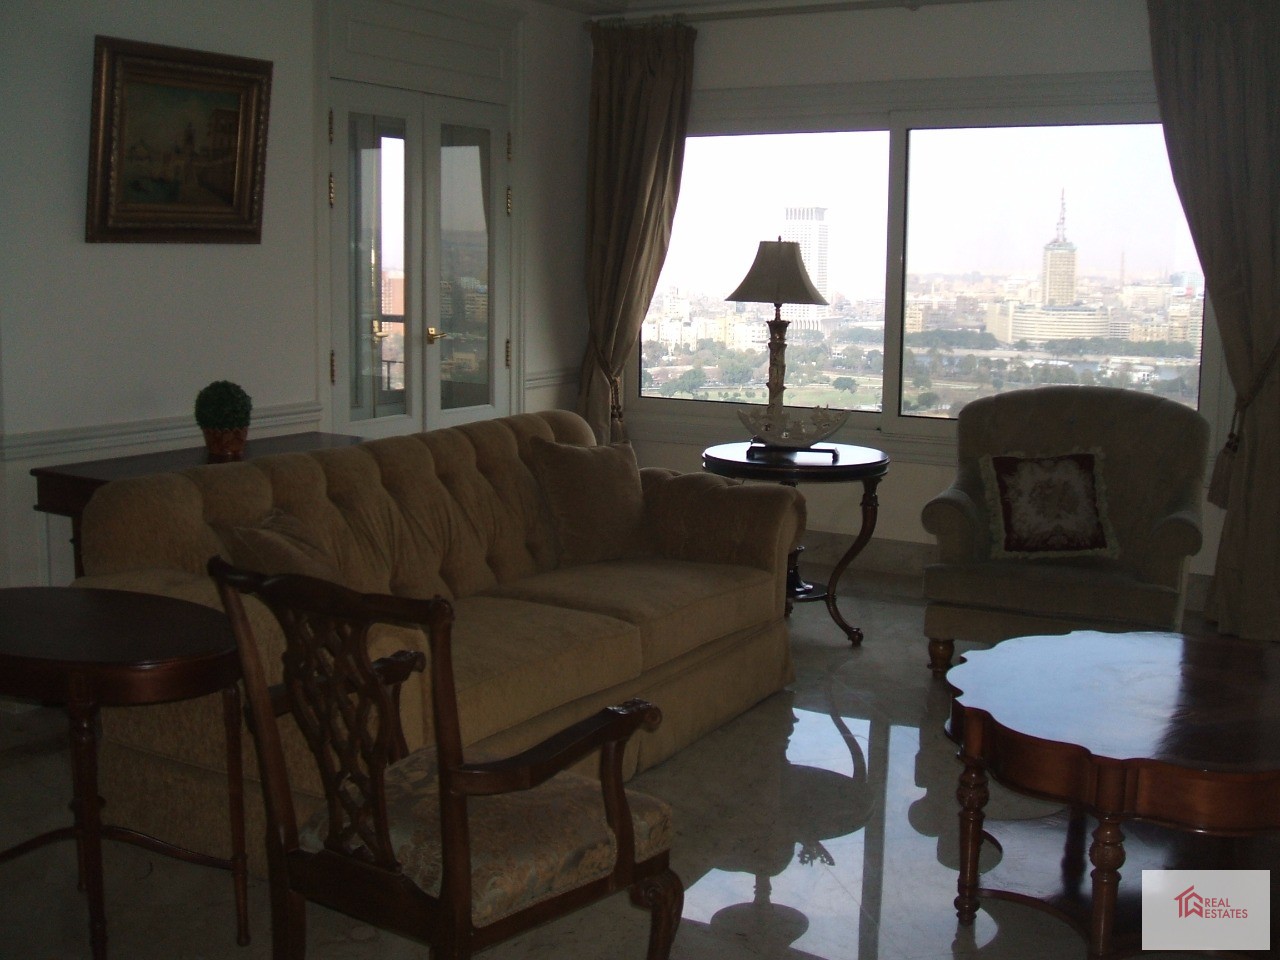 Nil Panoramik Manzaralı Agouza Bölgesi'nde kiralık daire